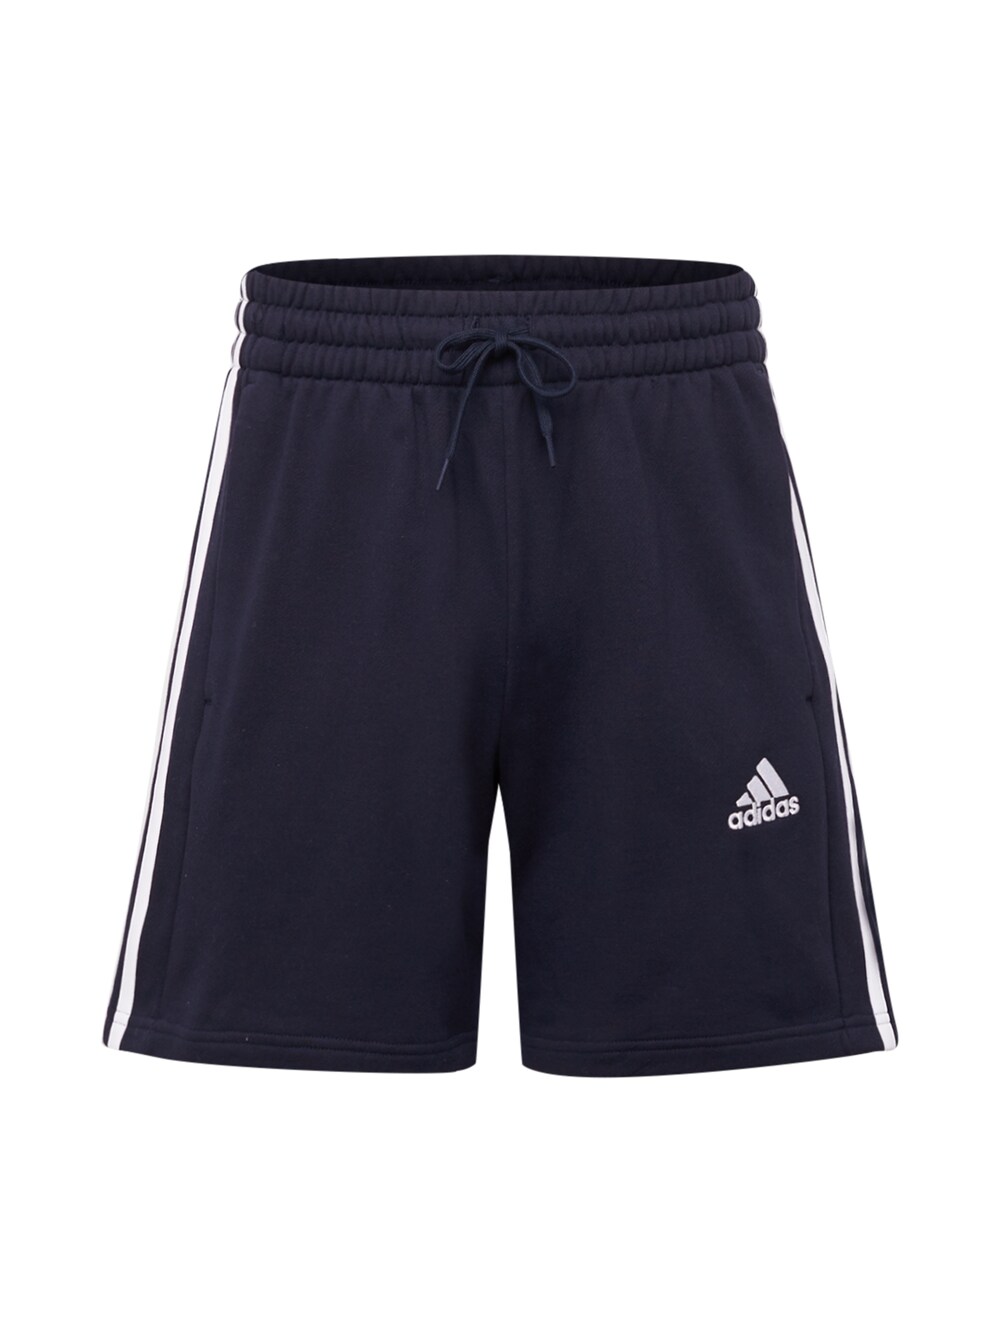 Обычные тренировочные брюки Adidas, темно-синий